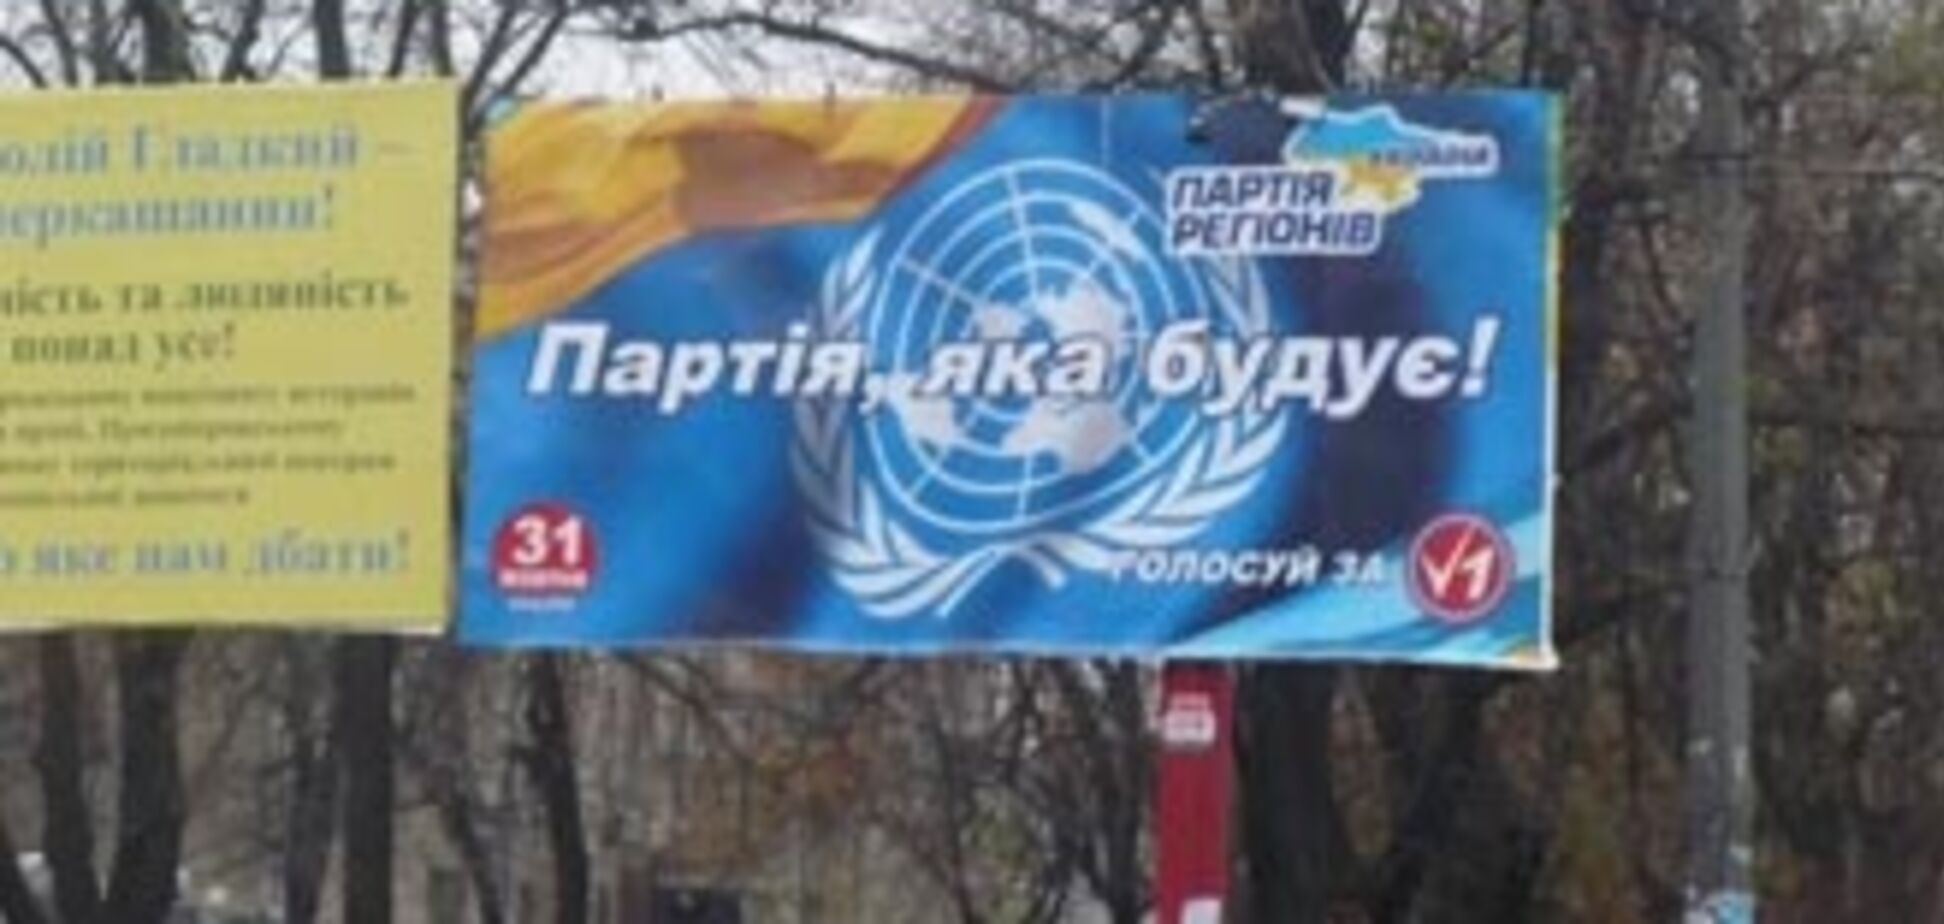 ООН вимагає від ПР прибрати рекламу з їх логотипом. ФОТО